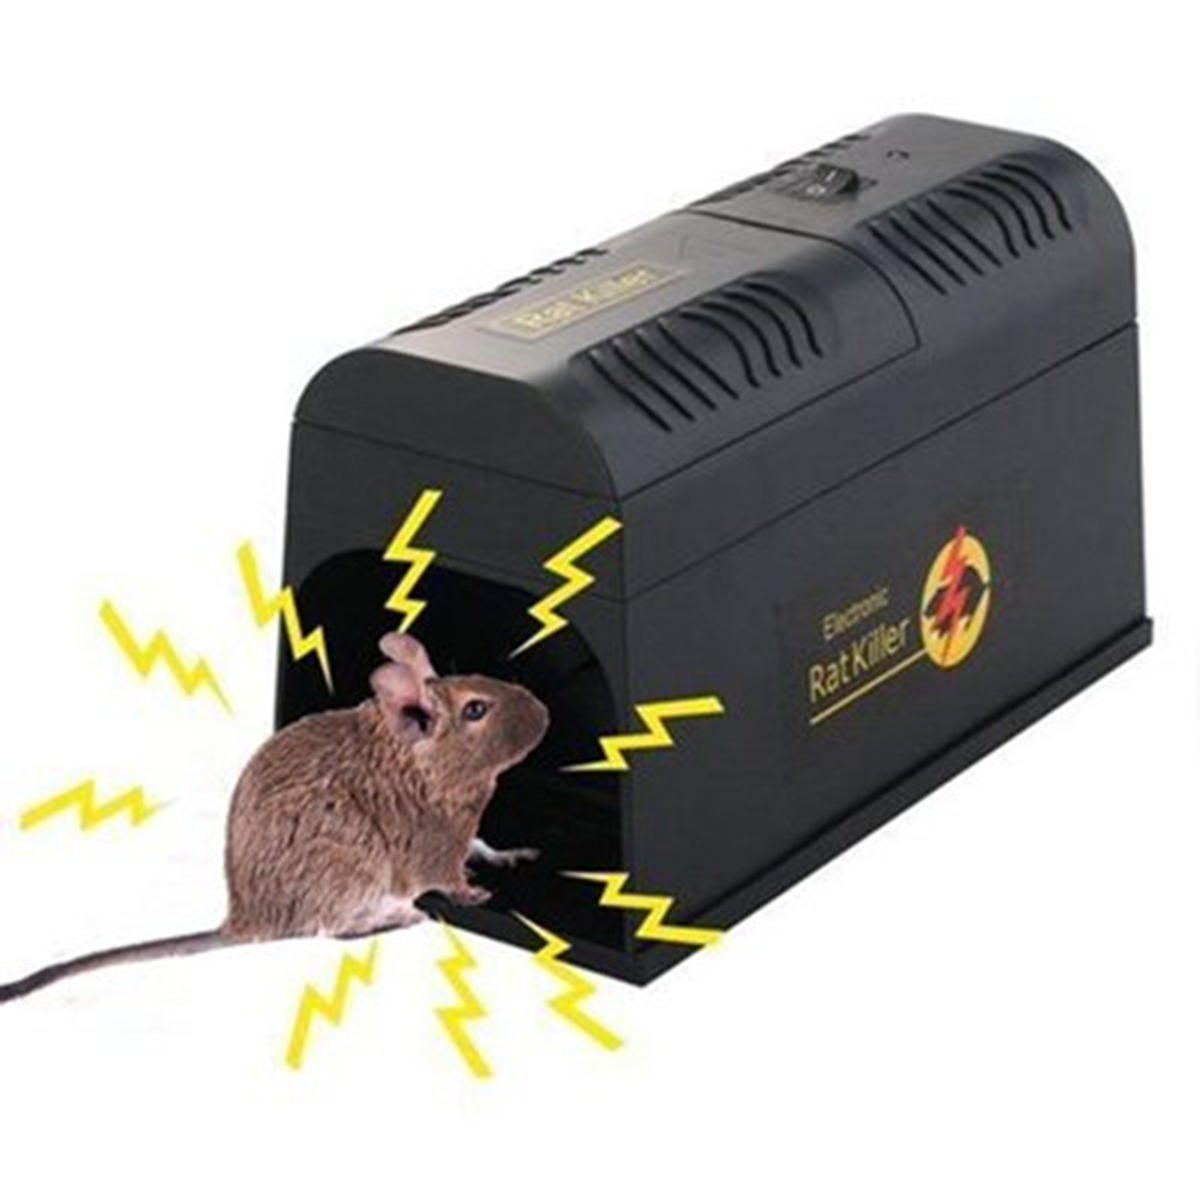 Electronic Rat and Rodent Trap Vermoeid en elimineer rattenmuizen of andere vergelijkbare knaagdiere